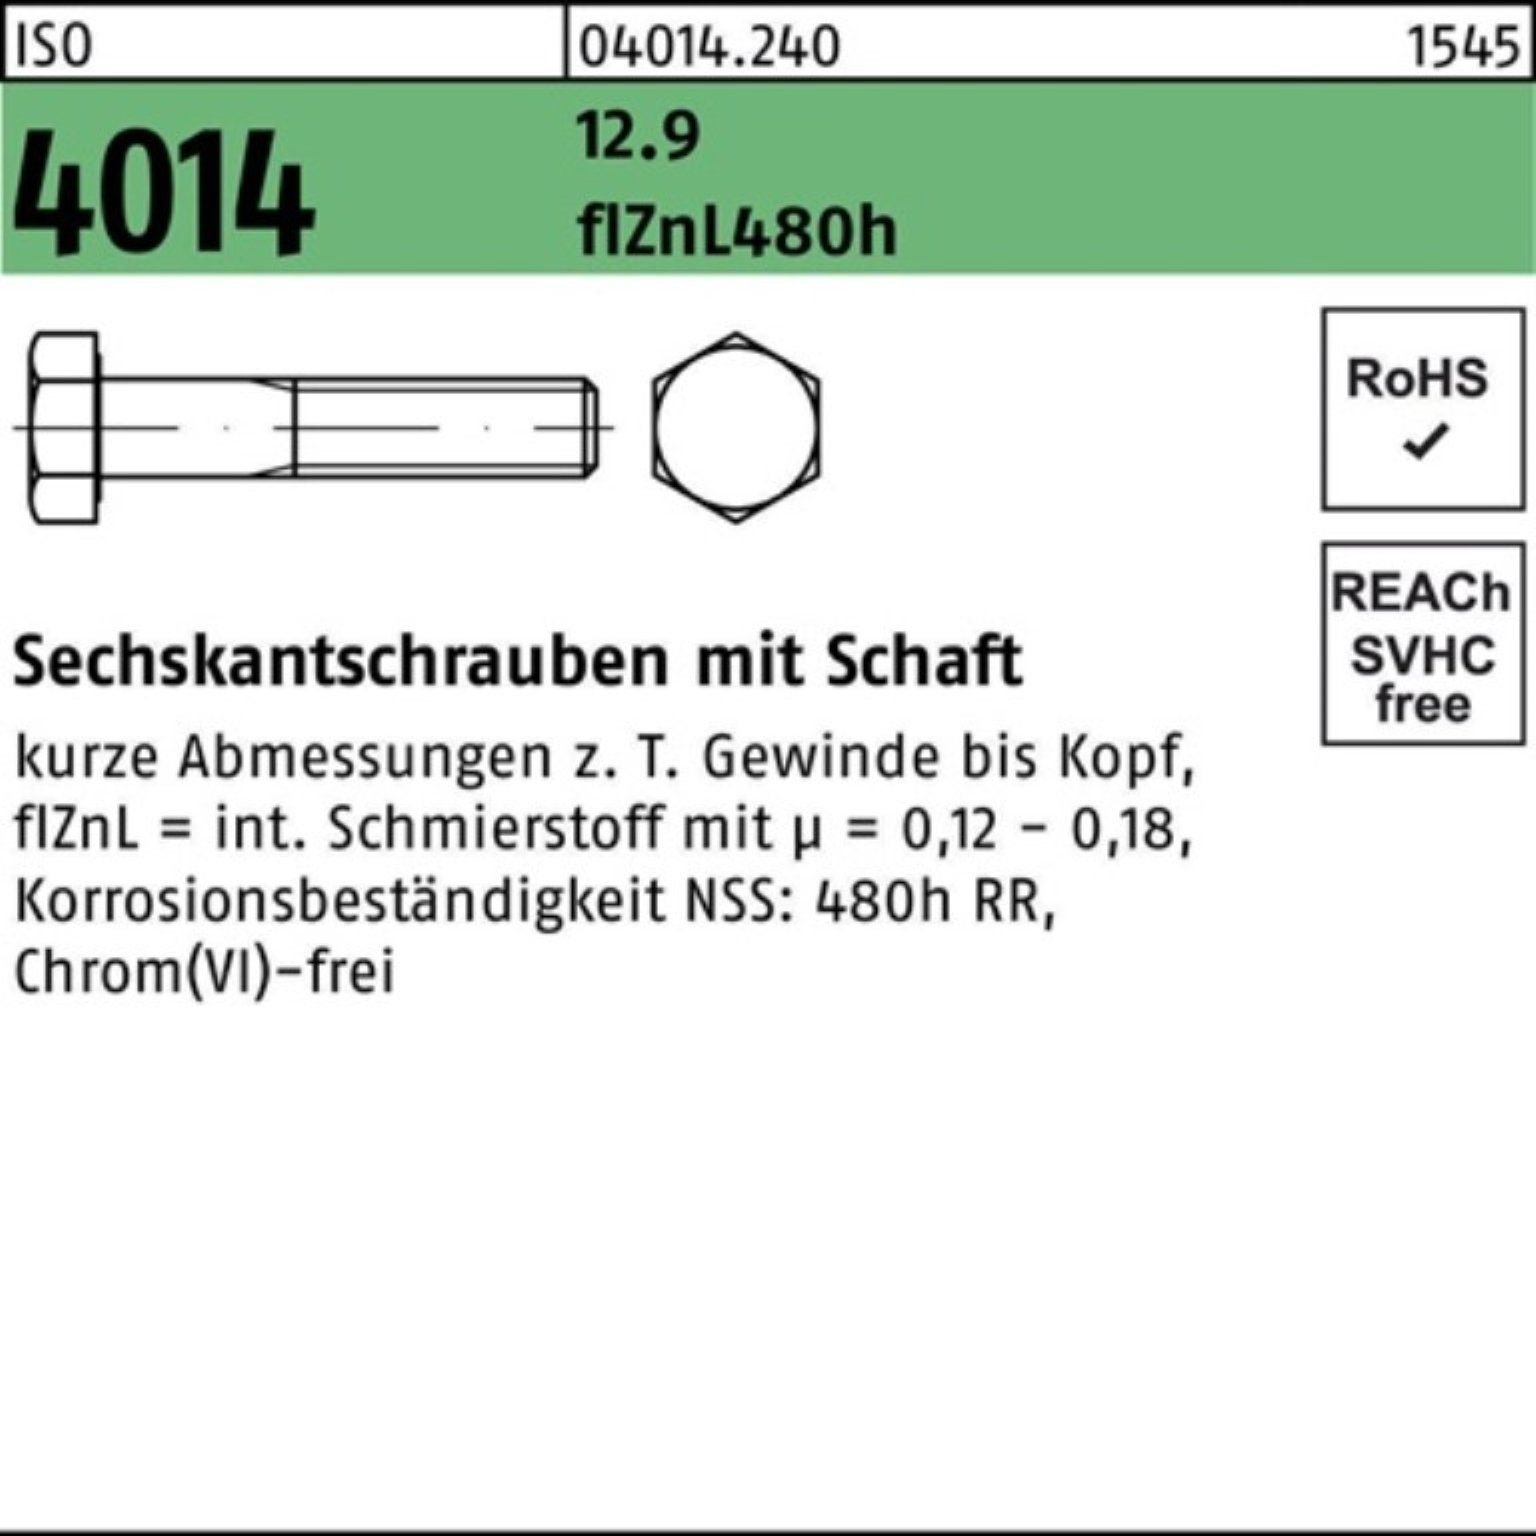 M12x65 Schaft flZnL Sechskantschraube Reyher 12.9 480h Sechskantschraube 4014 zi 100er Pack ISO